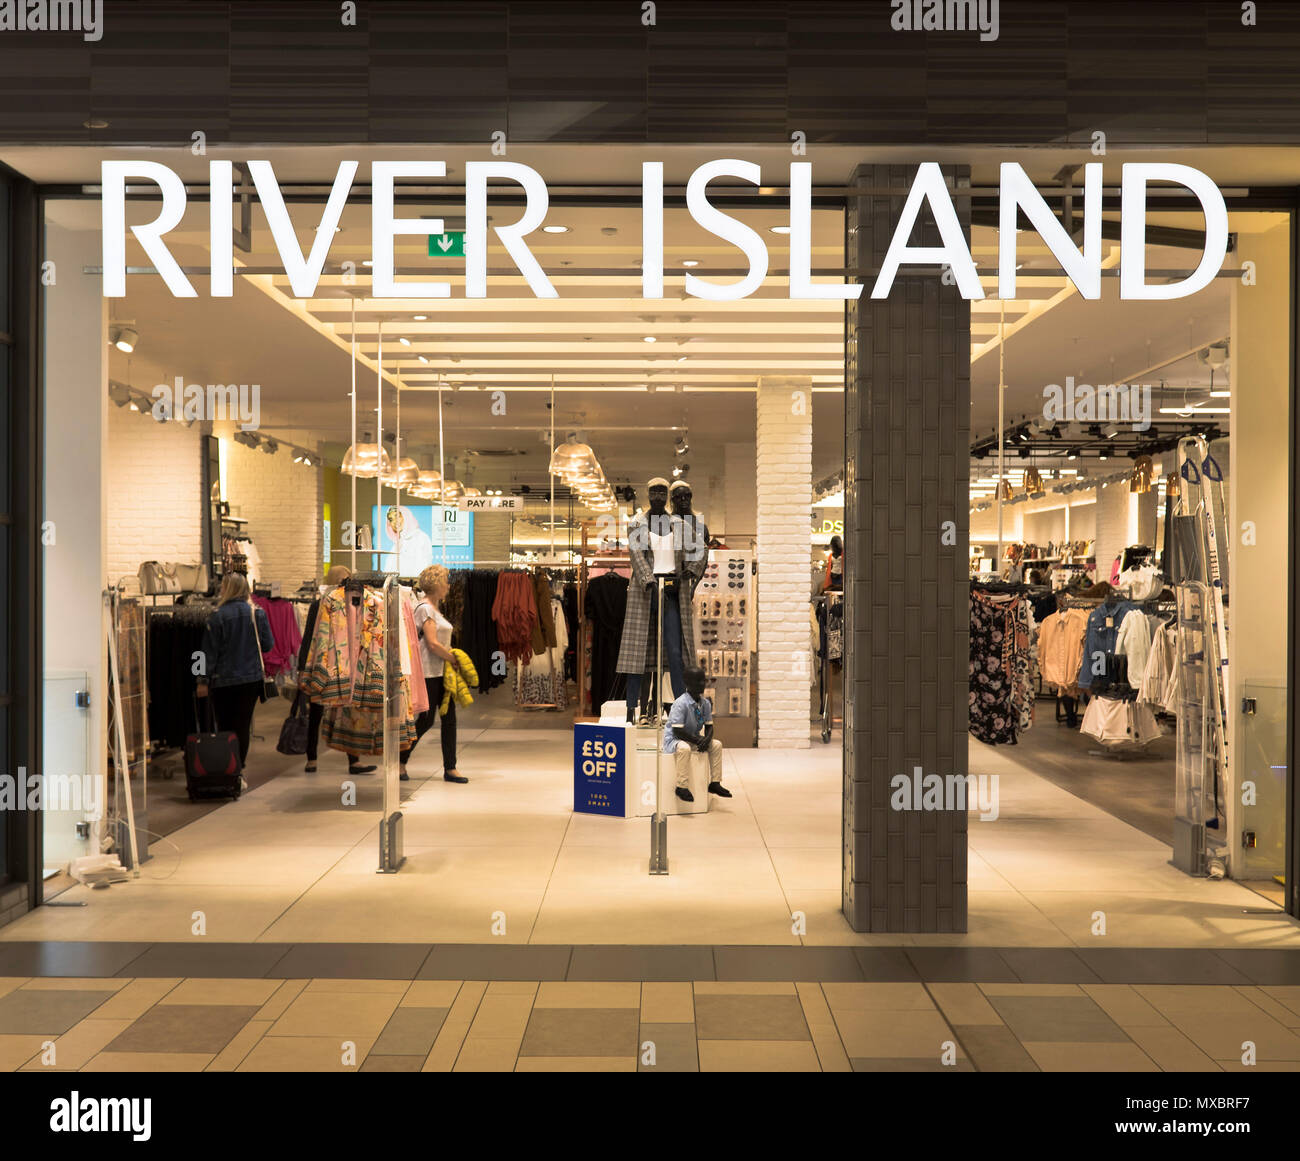 Dh River Island tiendas tienda Tienda Aberdeen Reino Unido Union Square ropa ropa Tiendas delantero Foto de stock